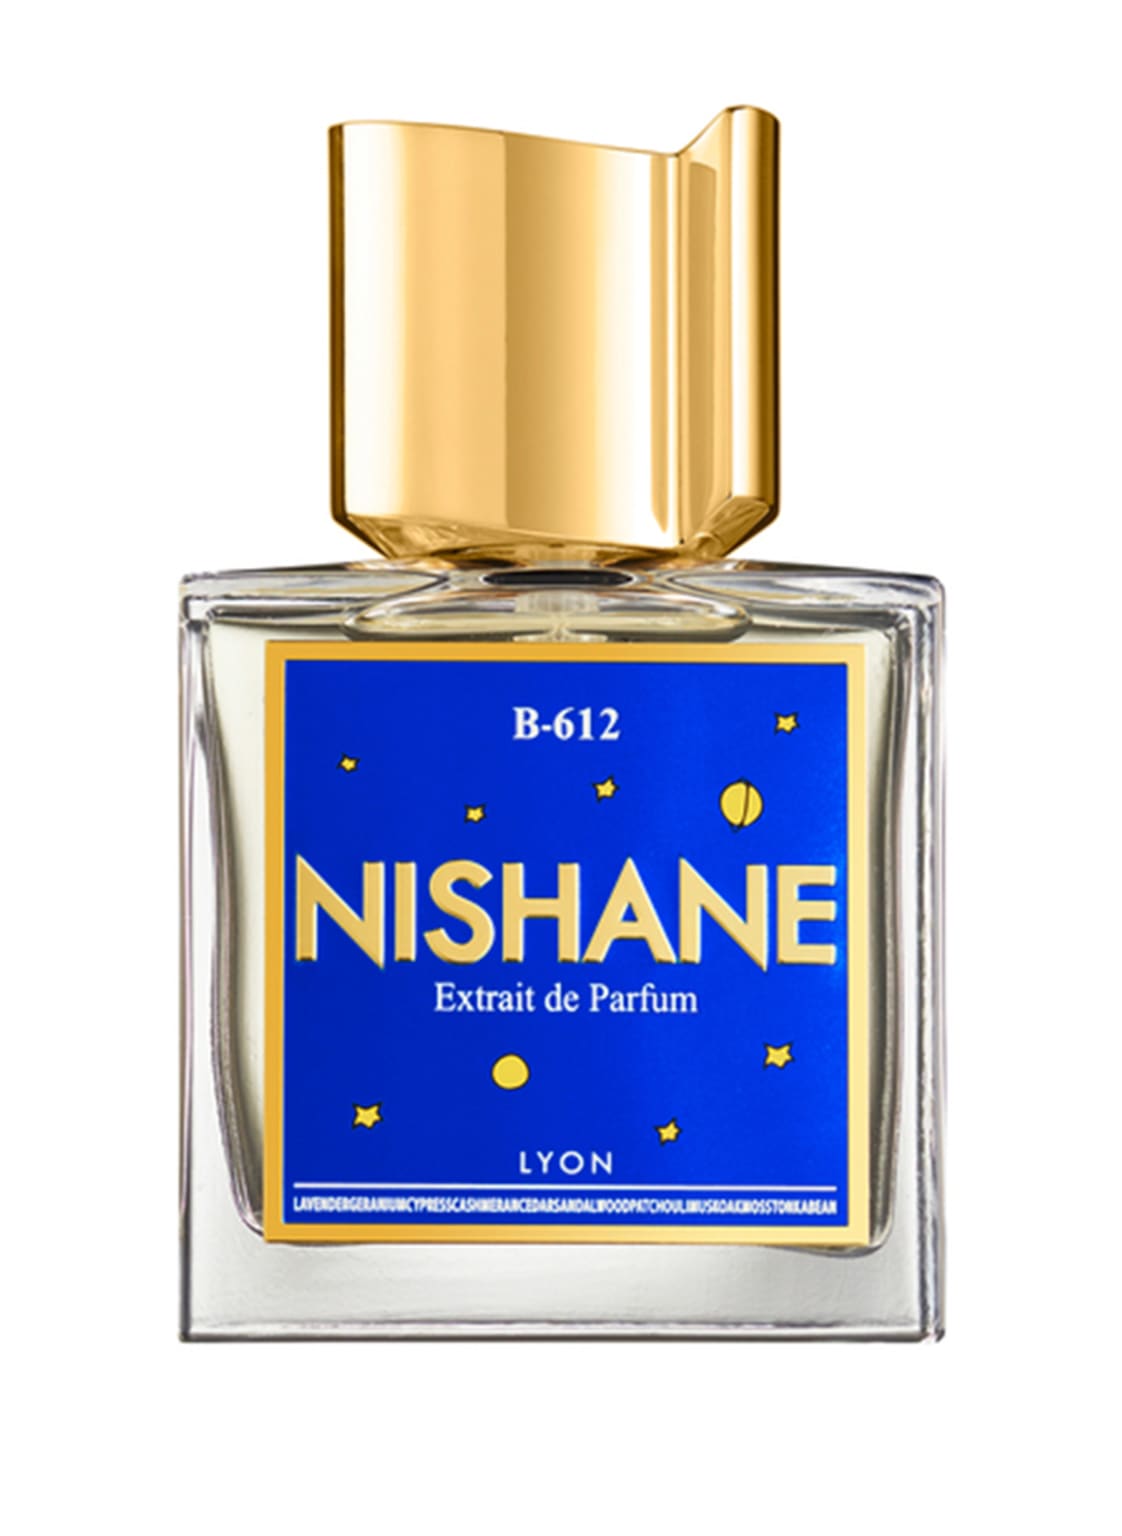 Nishane B-612 Extrait de Parfum 50 ml von NISHANE